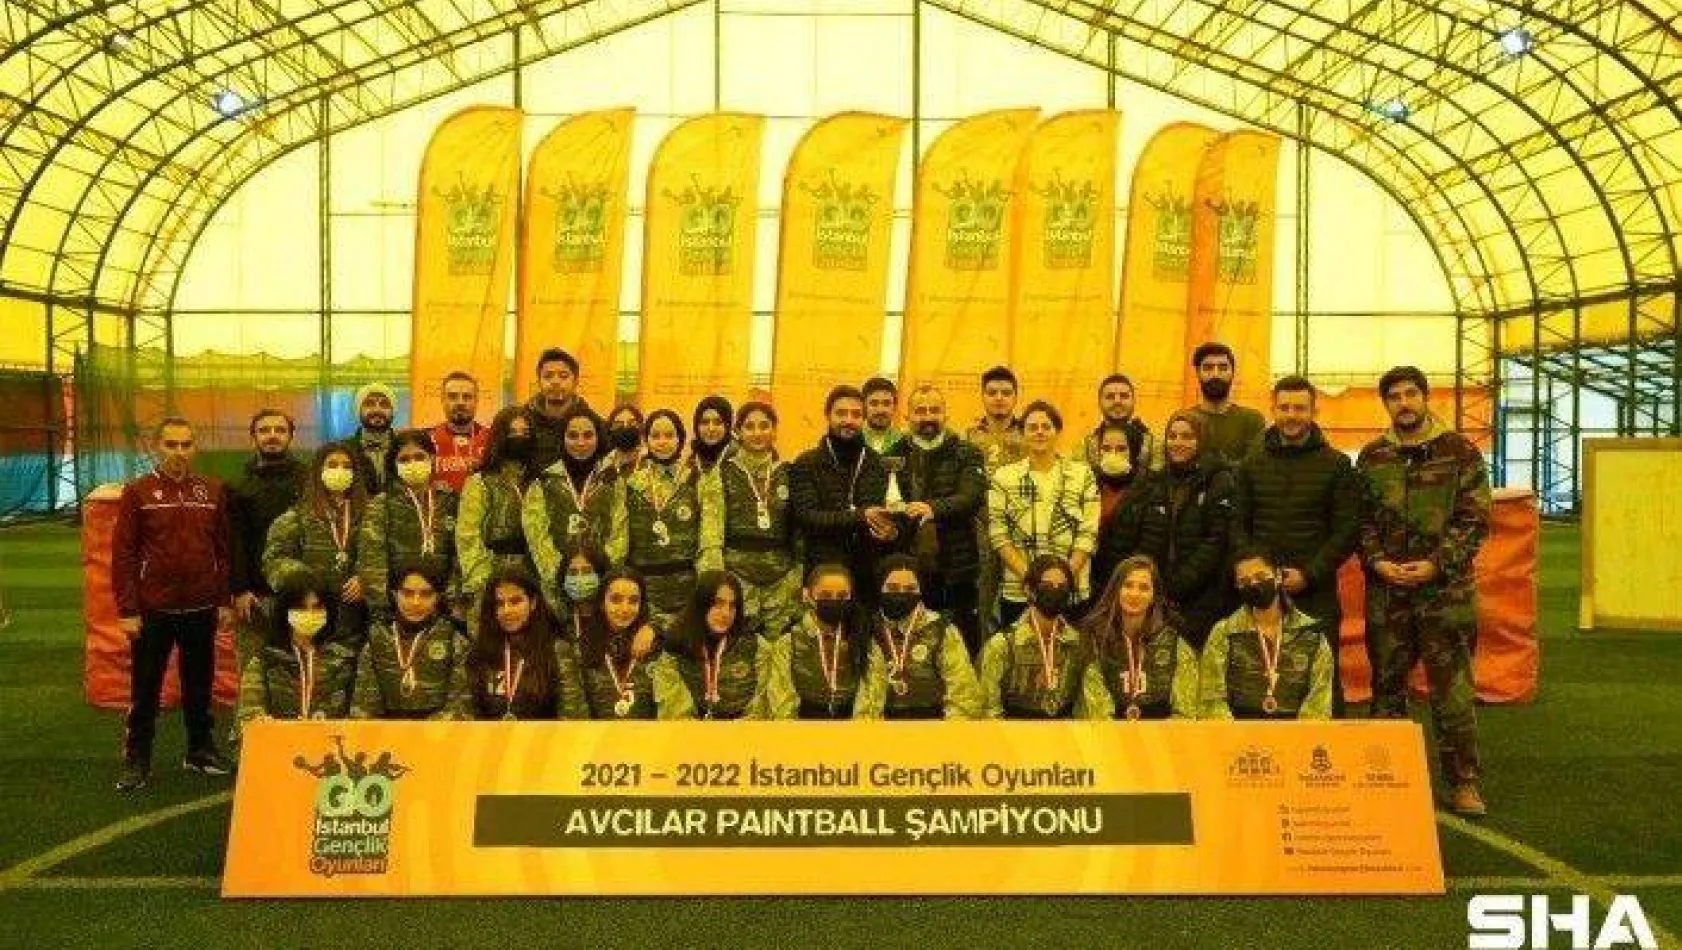 İstanbul Gençlik Oyunları'nda Avcılar paintball şampiyonu belli oldu